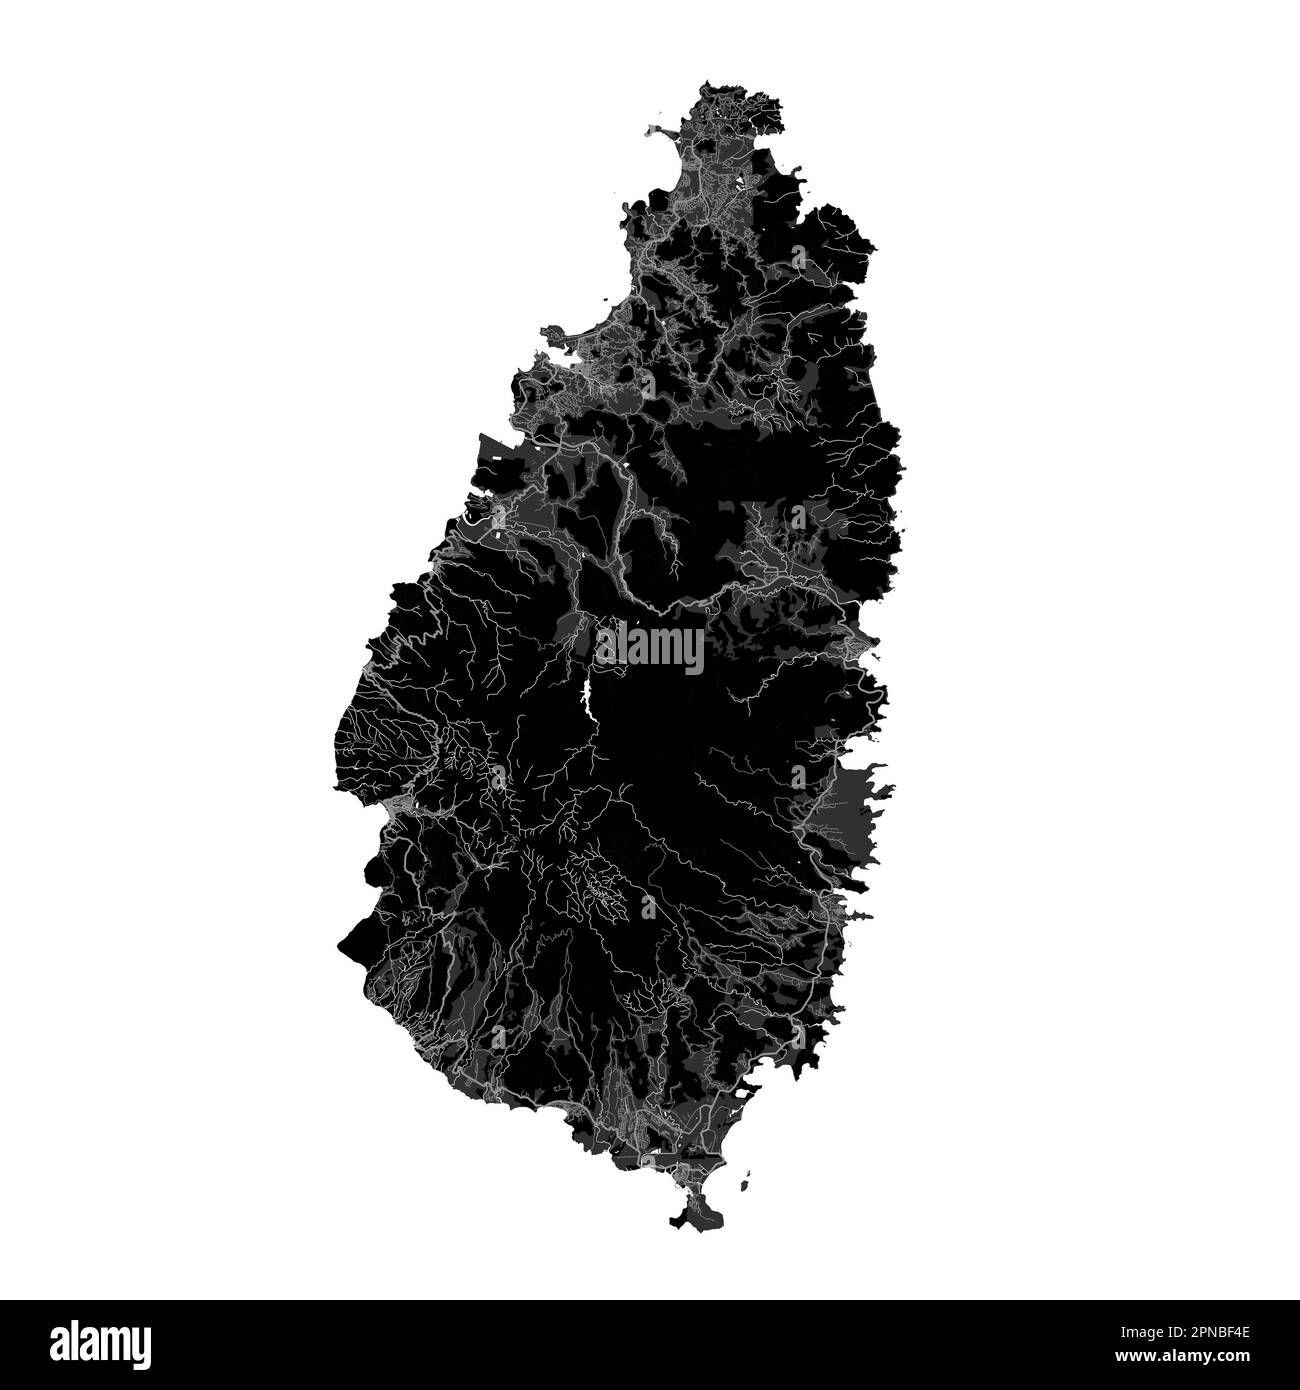 Carte noire de Sainte-Lucie, pays des Caraïbes. Carte détaillée avec frontière administrative, littoral, mer et forêts, villes et routes. Illustration de Vecteur